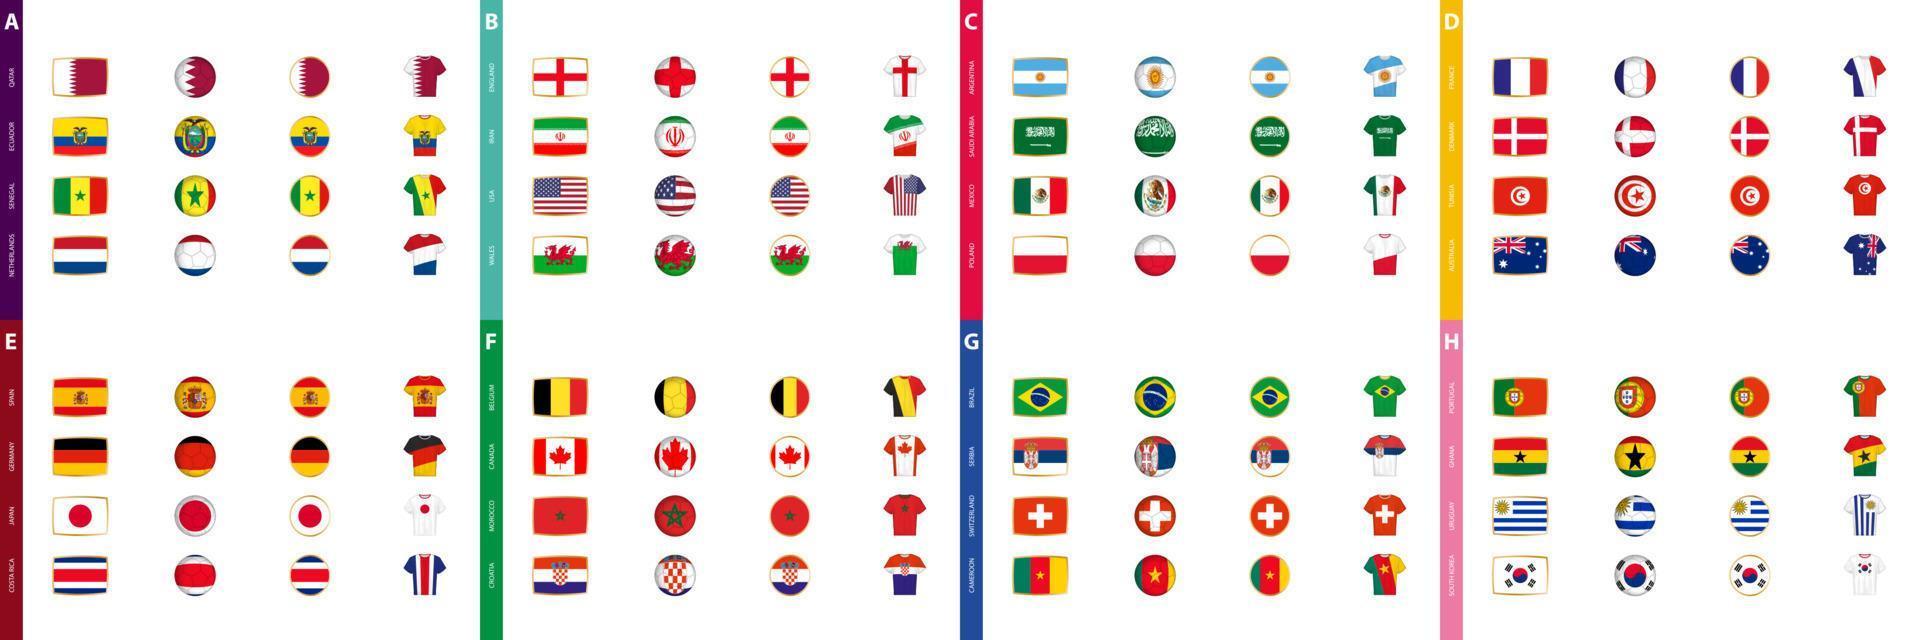 verzameling van voetbal toernooi vlaggen, een groot reeks van vlaggen gesorteerd door Amerikaans voetbal wedstrijd groep. vector